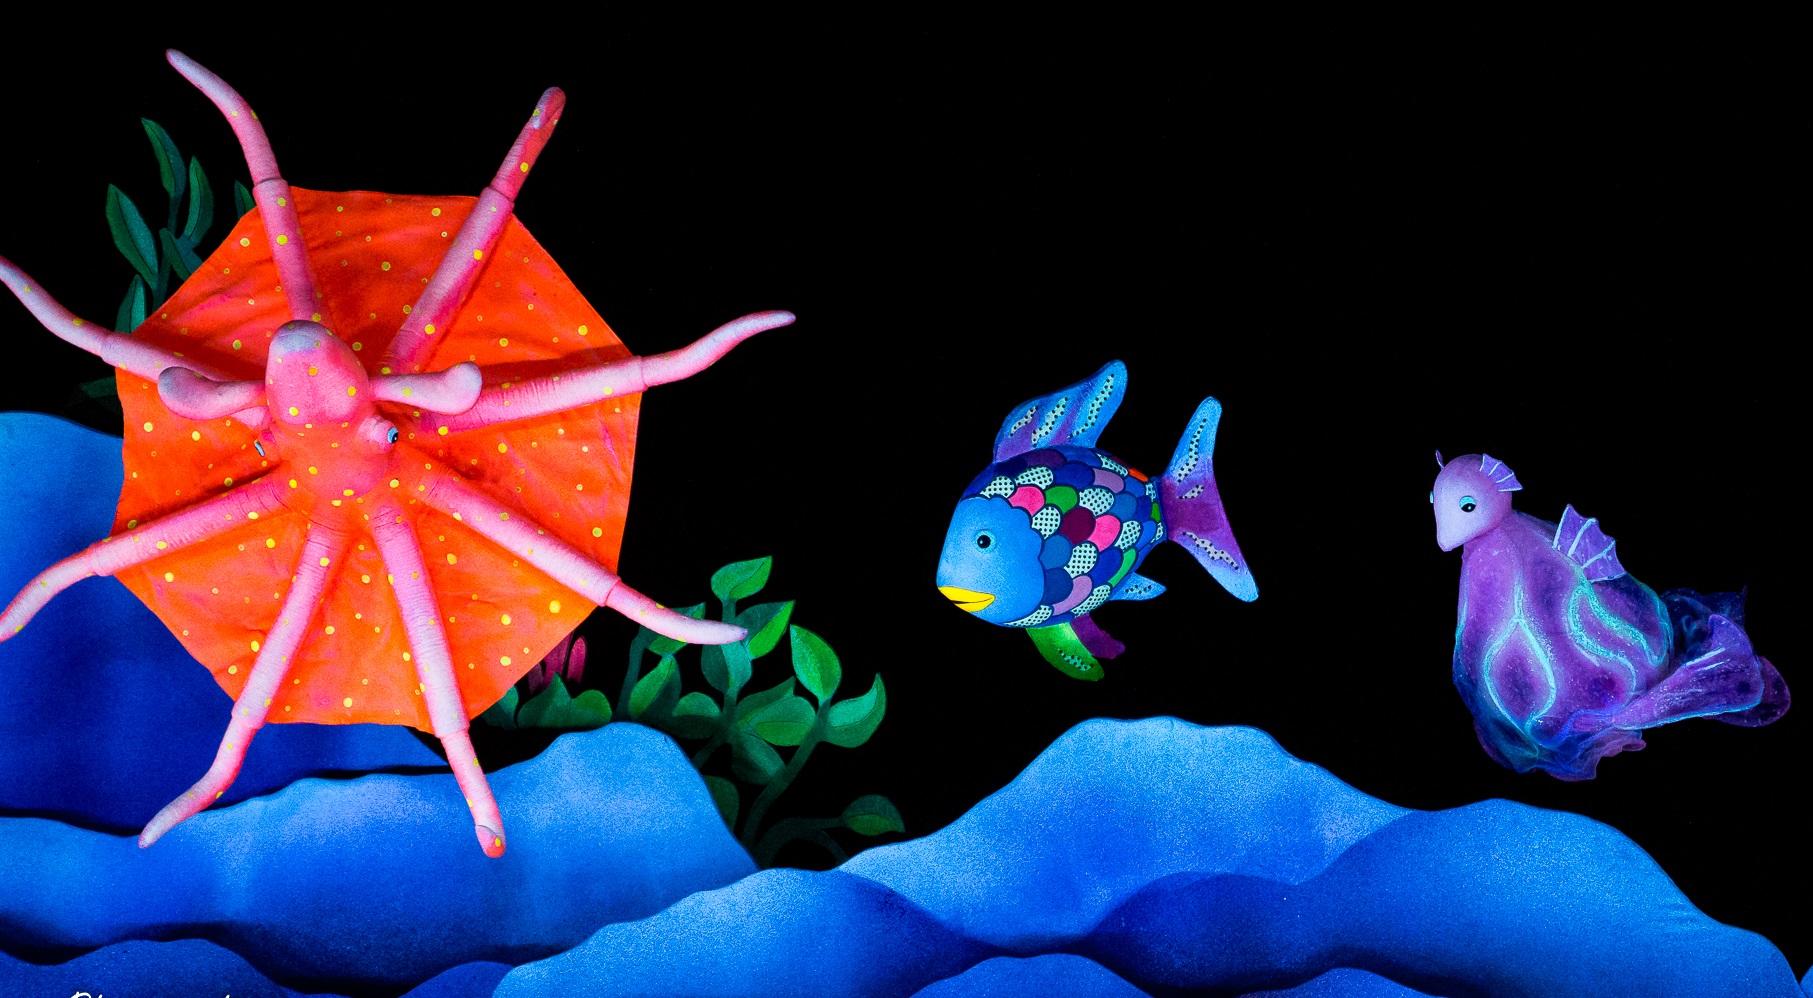 由康樂及文化事務署主辦的暑期藝術節「國際綜藝合家歡」將於七月五日至八月十一日舉行，邀請了多個海外、內地及本地藝團呈獻一系列趣味盎然、富有教育意義的節目。加拿大美人魚劇團改編馬克斯．菲斯特的暢銷同名繪本系列，帶來黑光布偶劇《彩虹魚的海底大冒險》。